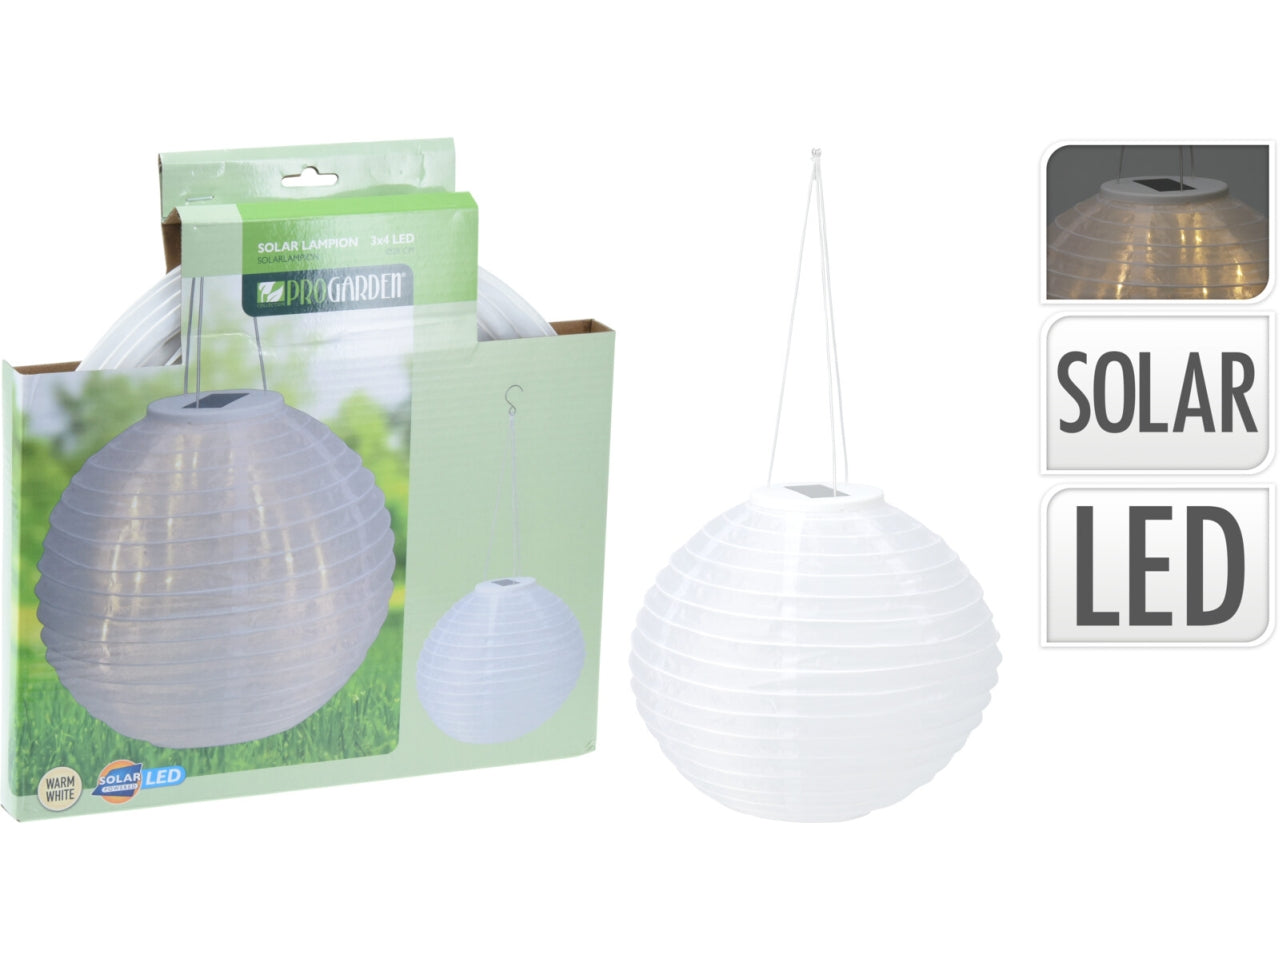 Lampada a sospensione solare da giardino in plastica, bianca con LED bianco caldo, autonomia 6 ore - 28x50 cm - Koopman